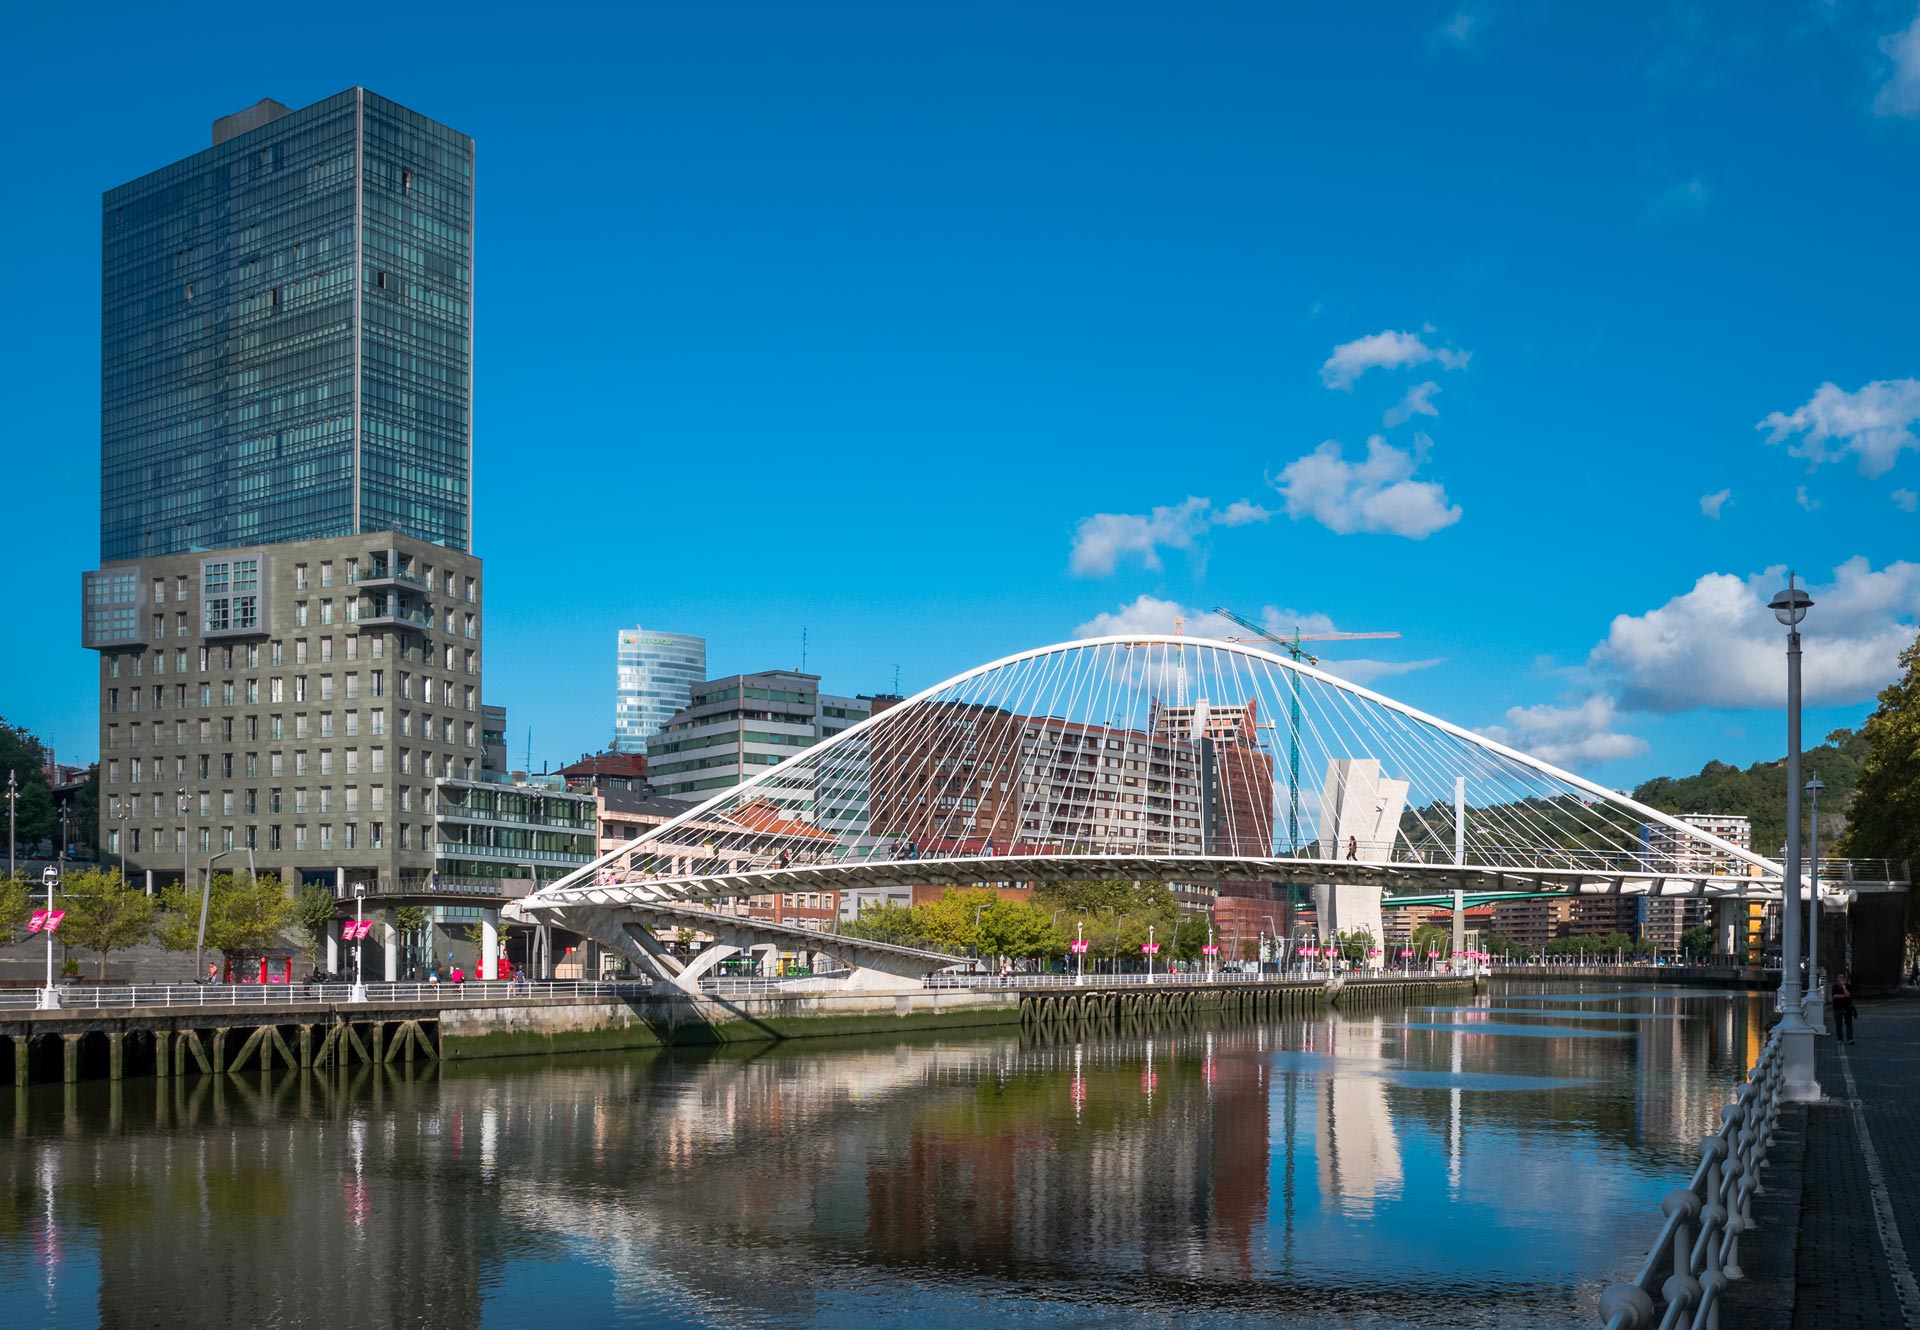 Zubizuri Bridge, Bilbao